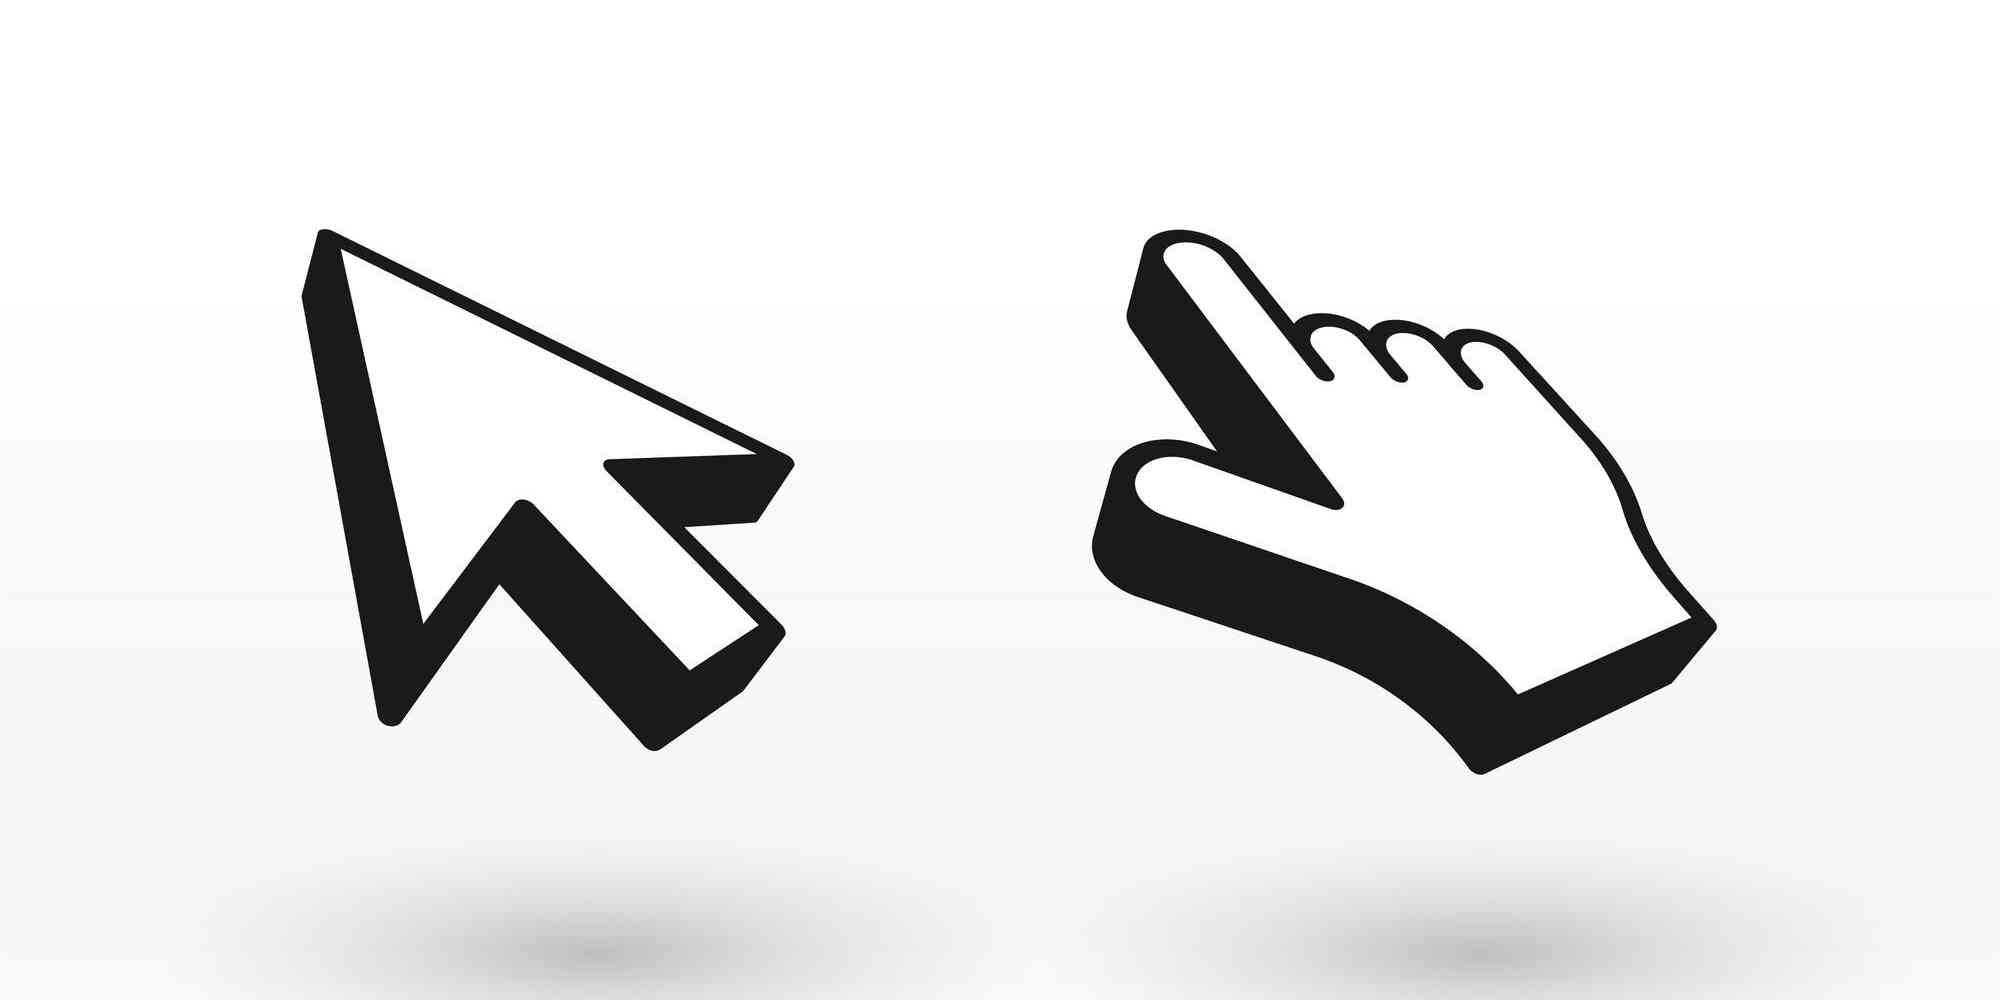 图中画了两个鼠标光标，一个箭头形状，一个手形状。